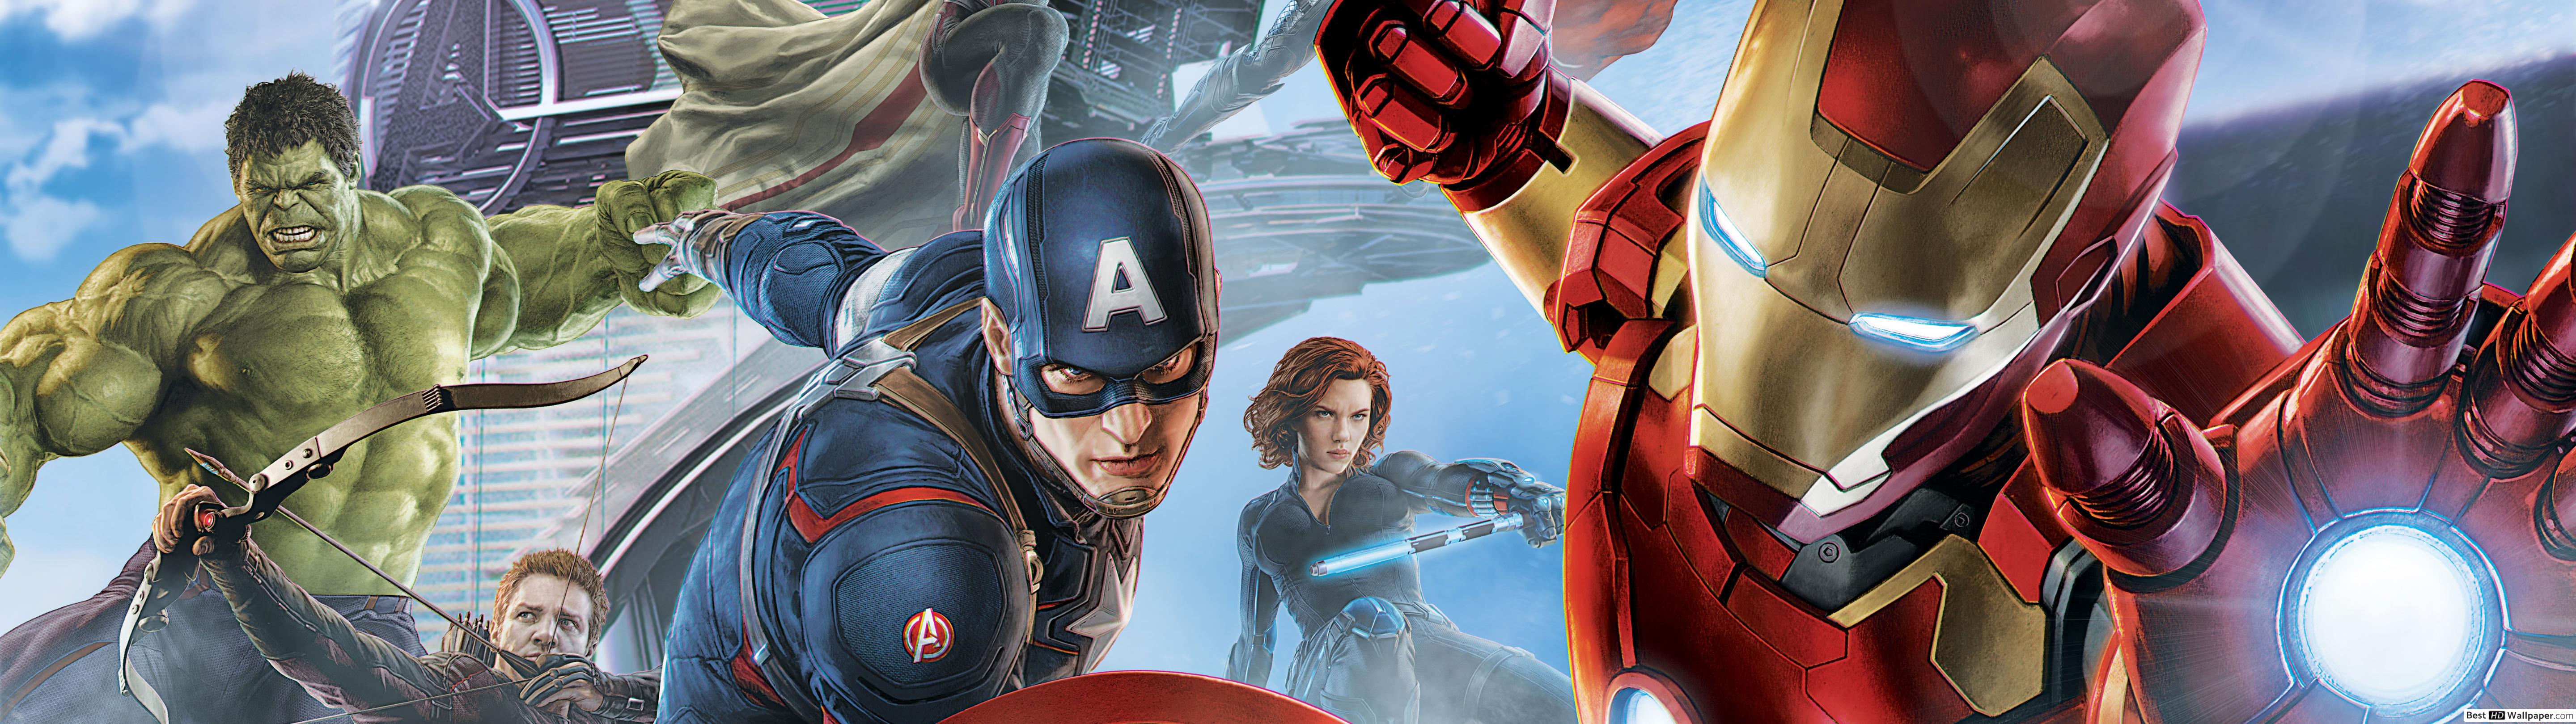 Avengers assemble! HD wallpaper download